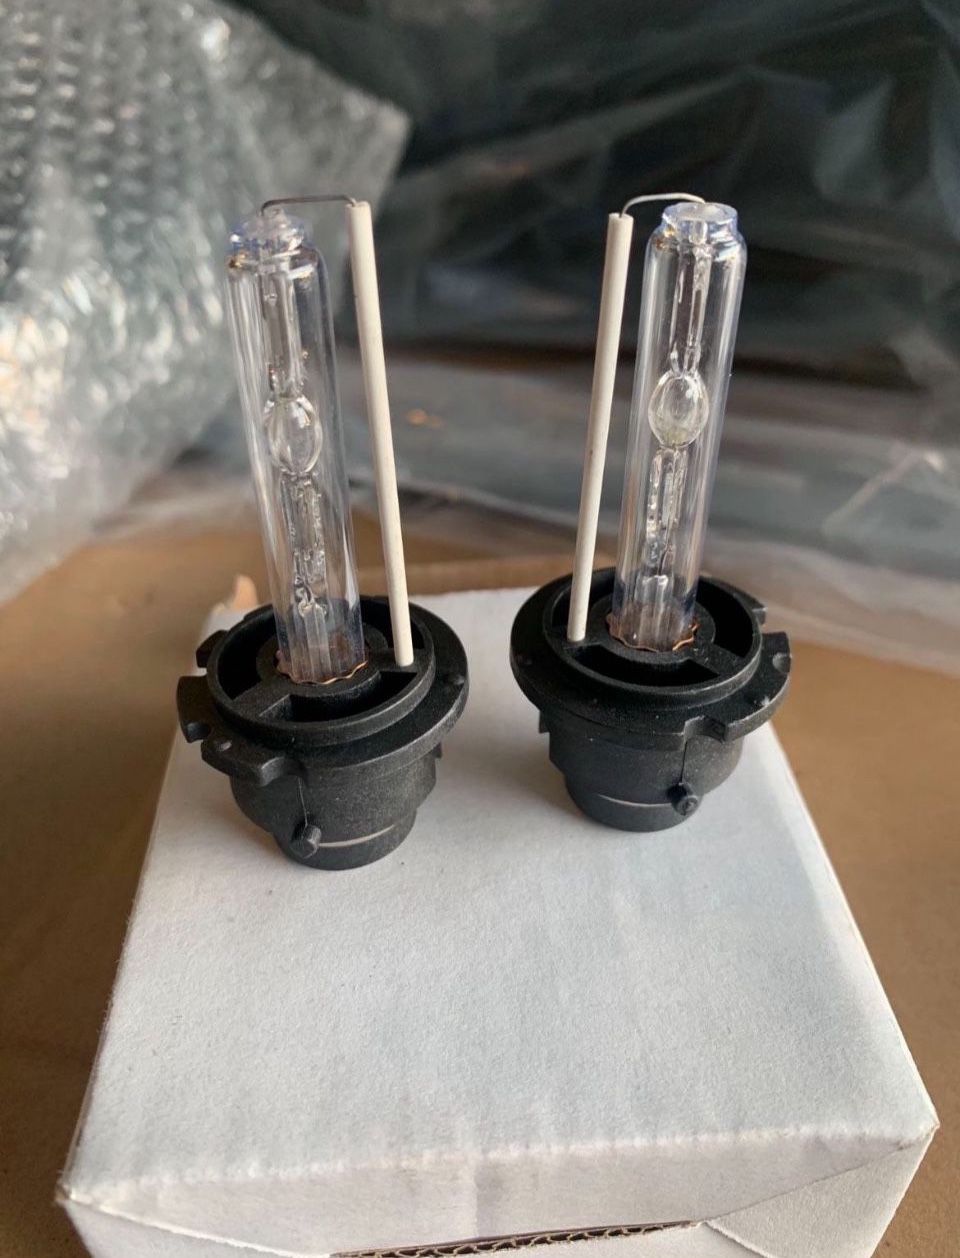 New D2S Headlight Bulbs